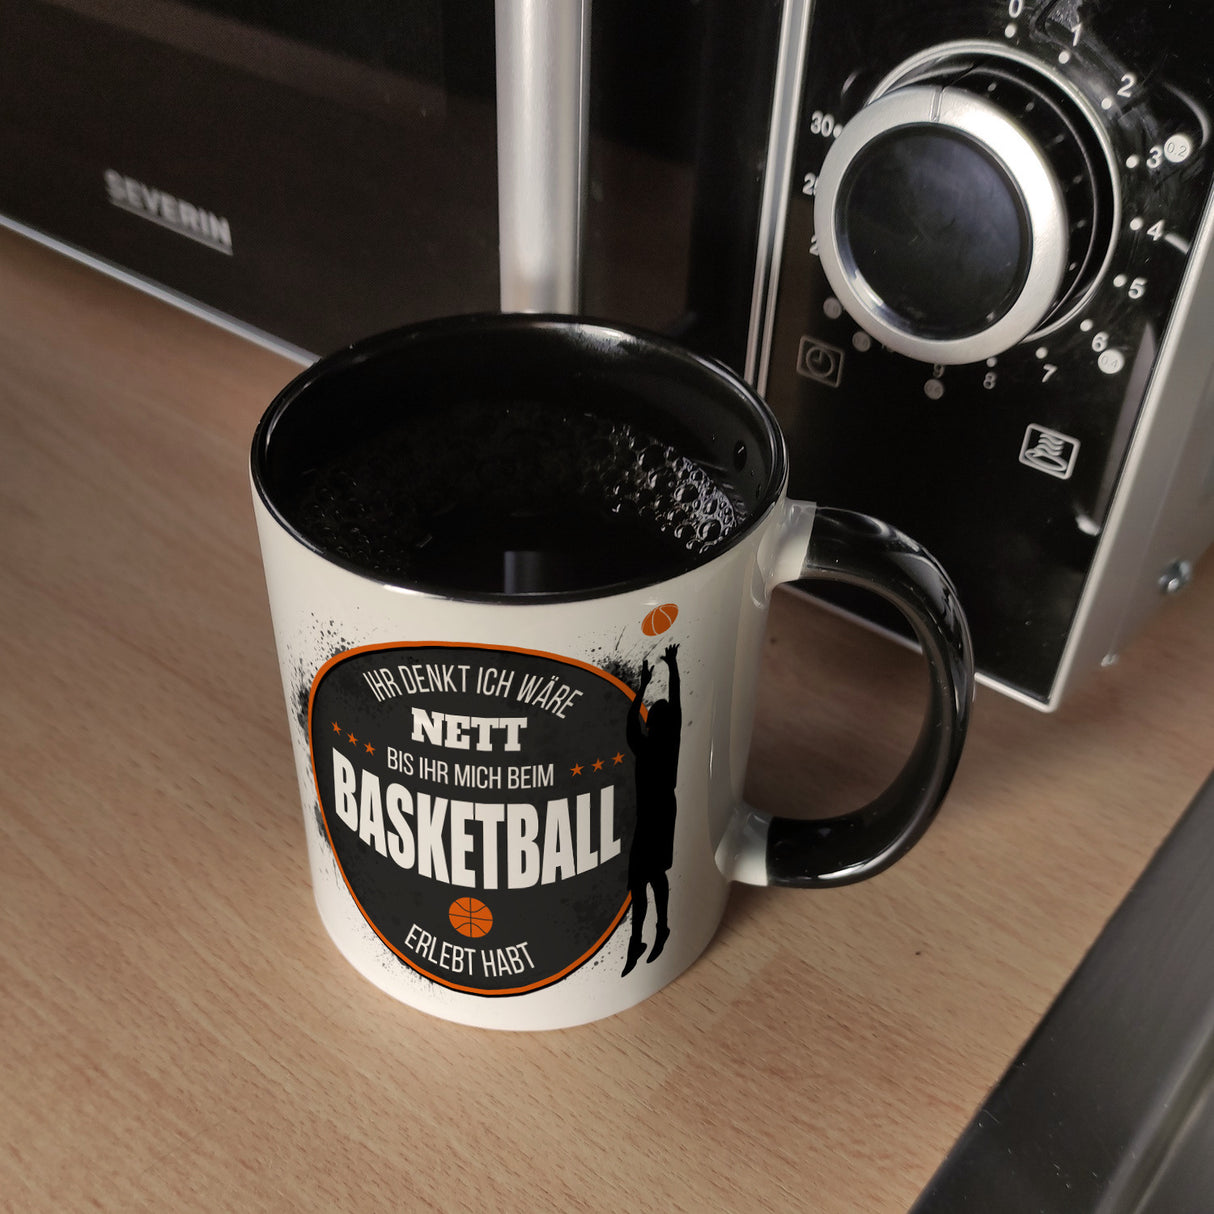 Ihr denkt ich wäre nett, bis ihr mich beim Basketball erlebt habt Kaffeebecher